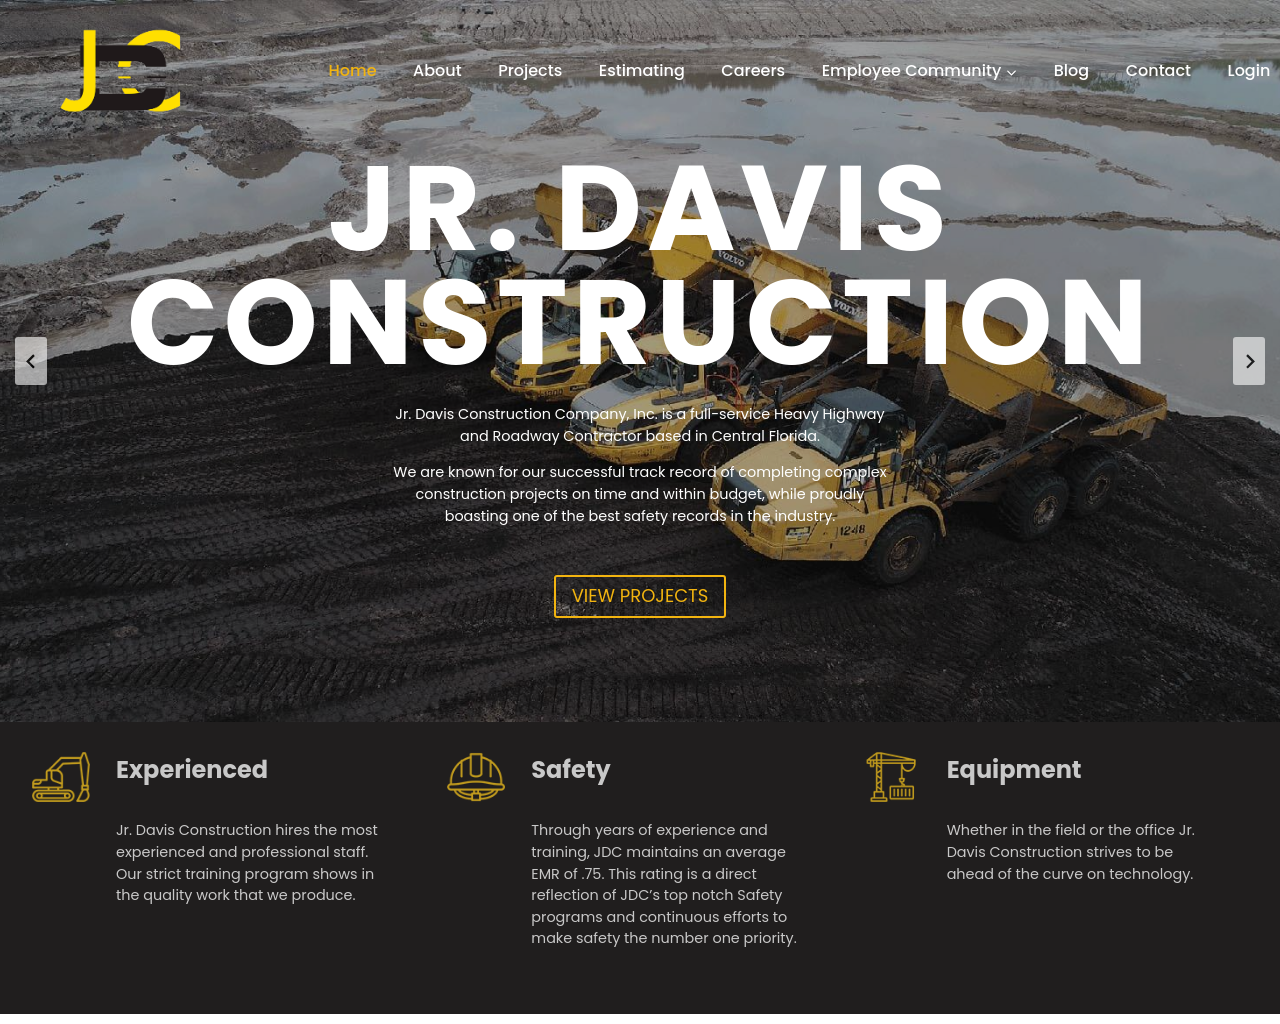 jr-davis.com